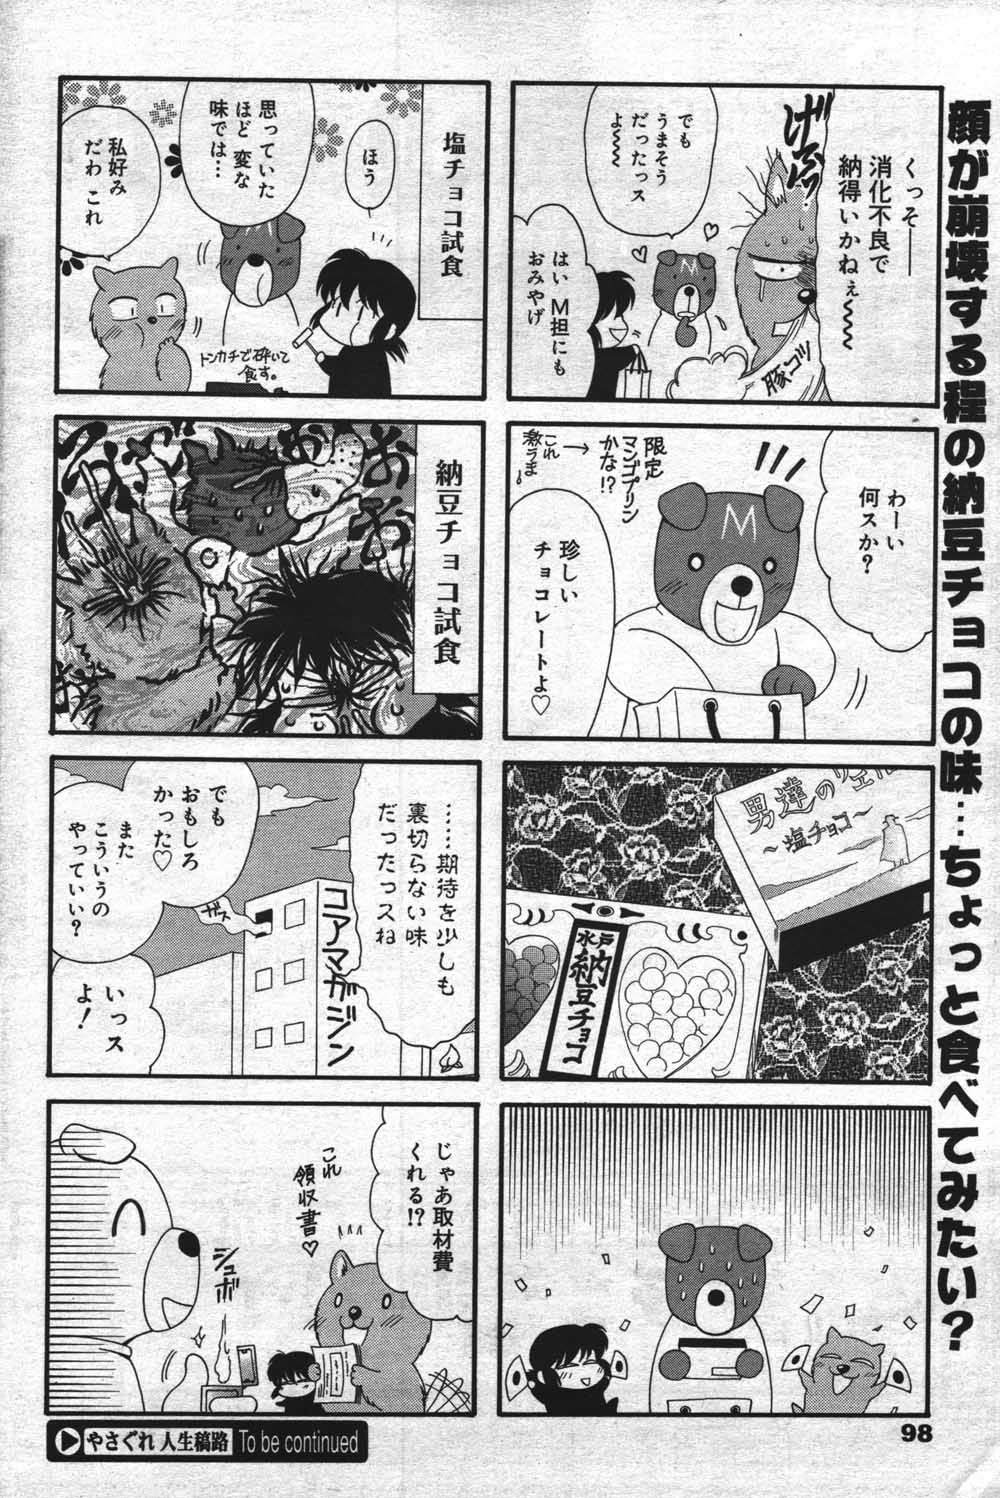 Manga Bangaichi [2004-07] (成年コミック) [雑誌]漫画ばんがいち 2004年07月号